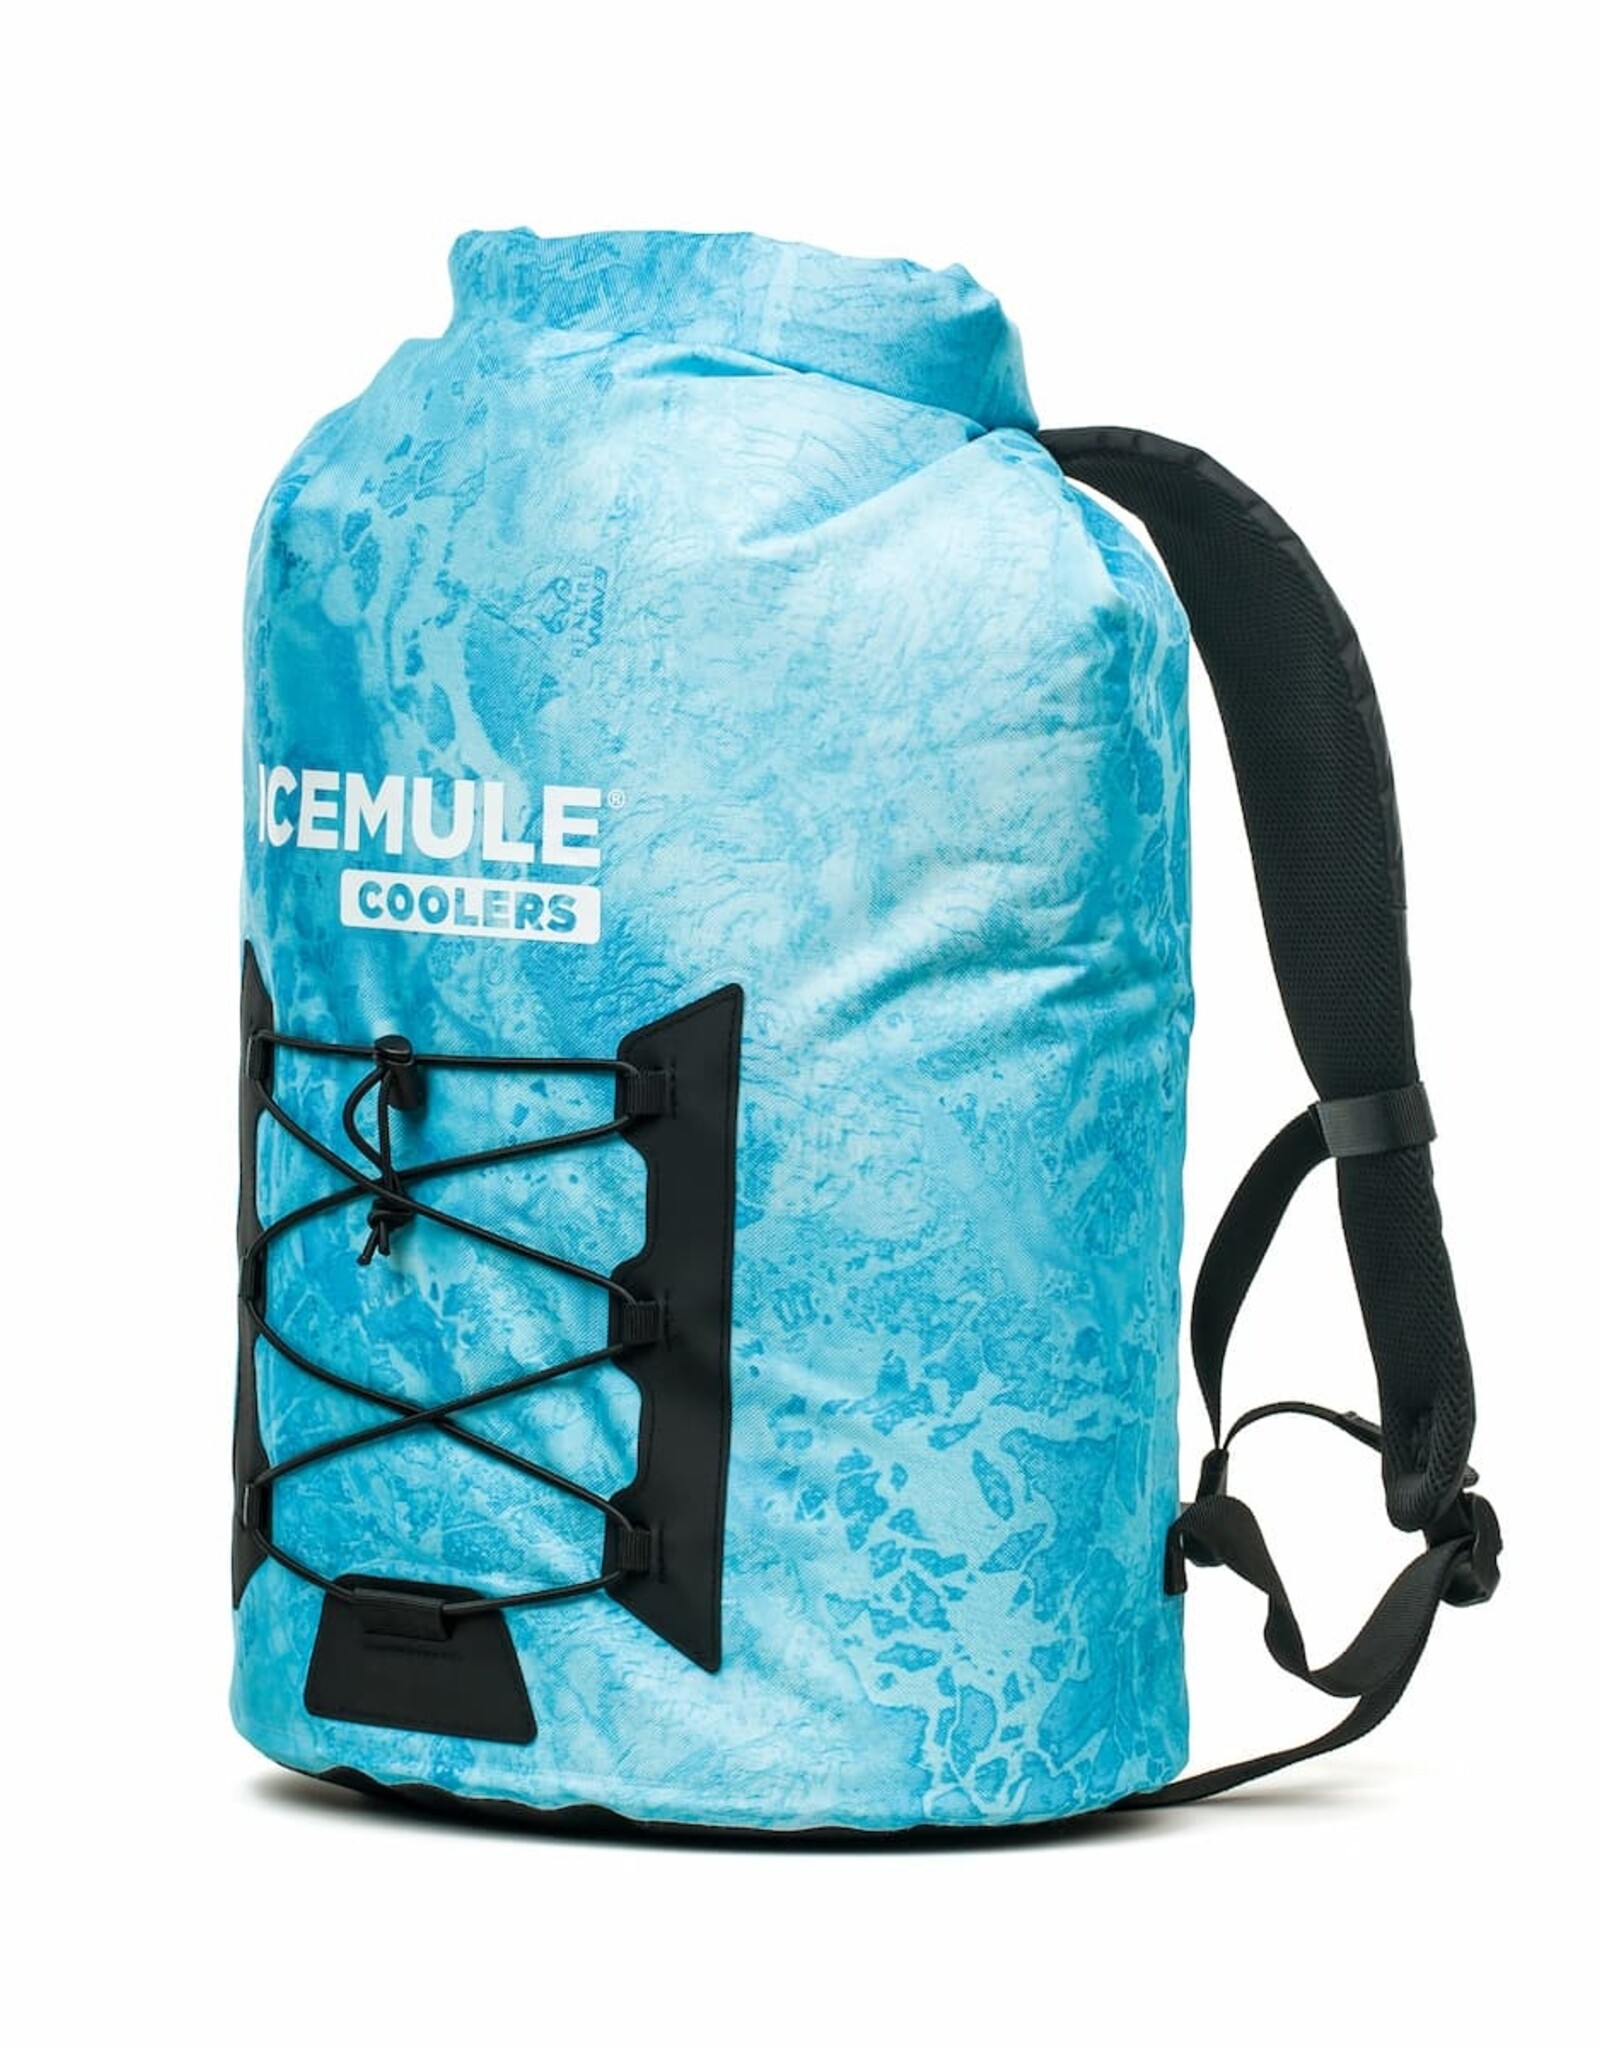 IceMule IceMule Pro Cooler